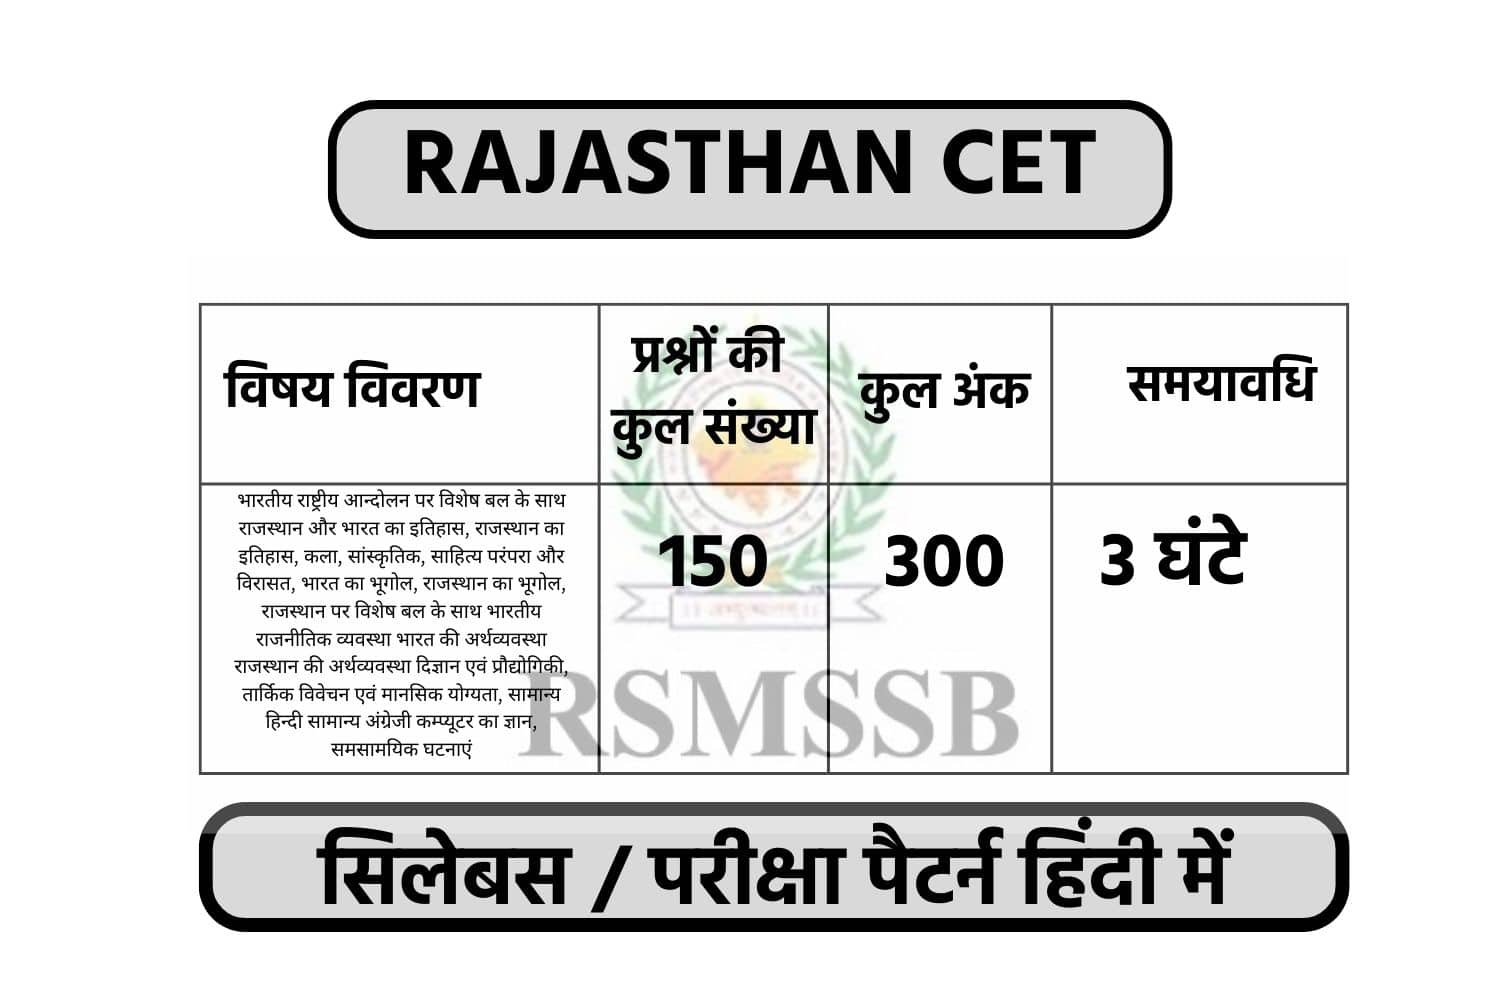 Rajasthan CET Syllabus 2022 In Hindi | राजस्थान CET सिलेबस हिंदी में